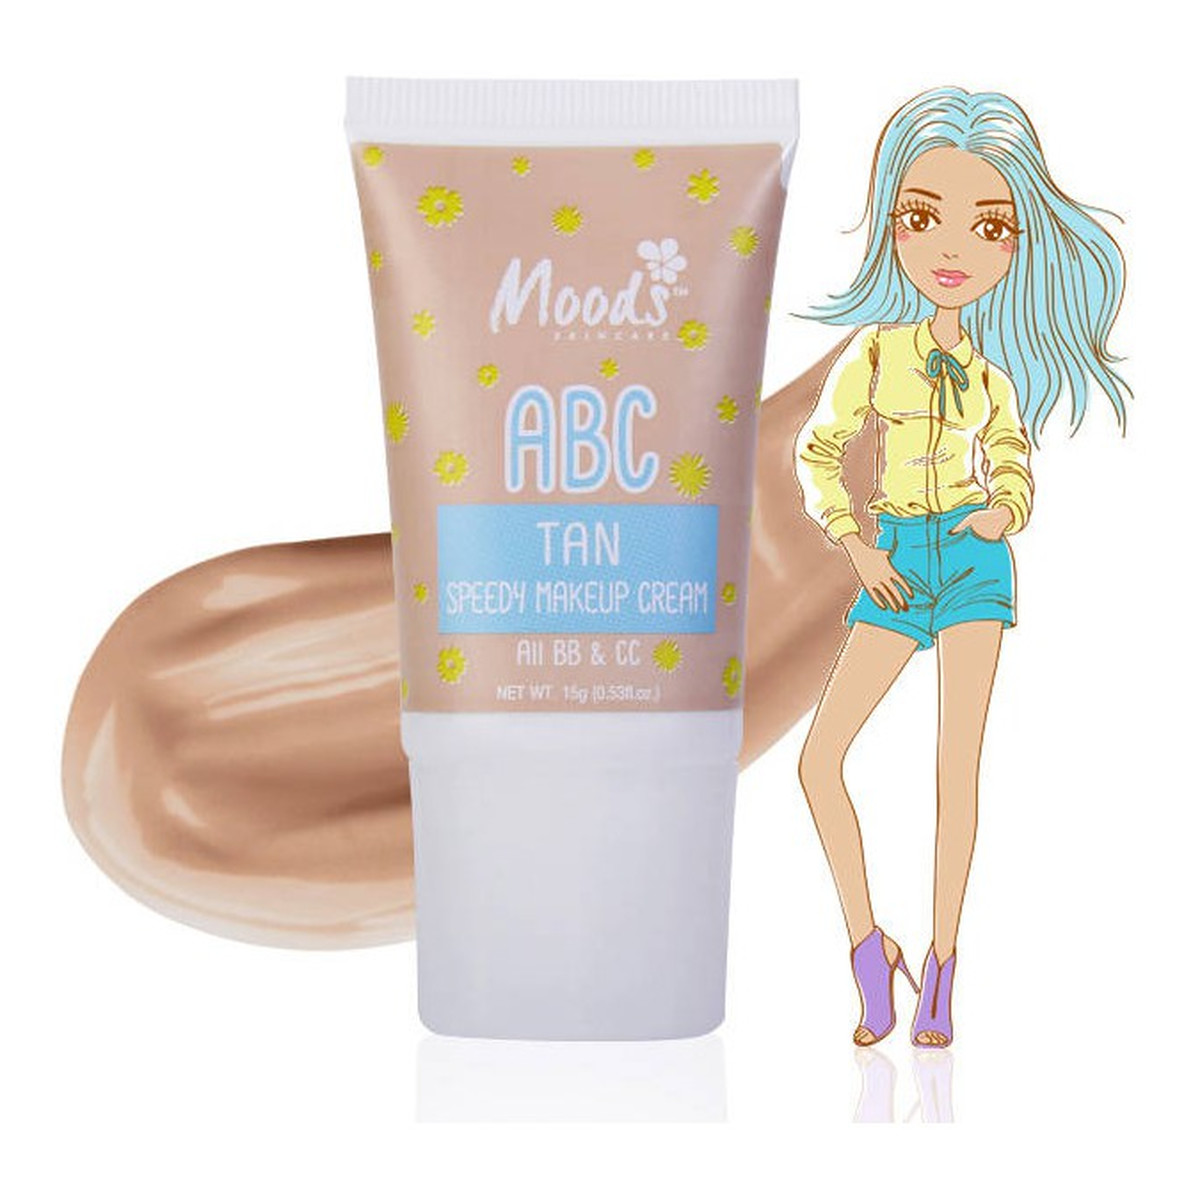 Moods ABC Speedy Makeup Cream nawilżający krem BB&CC do twarzy 15g